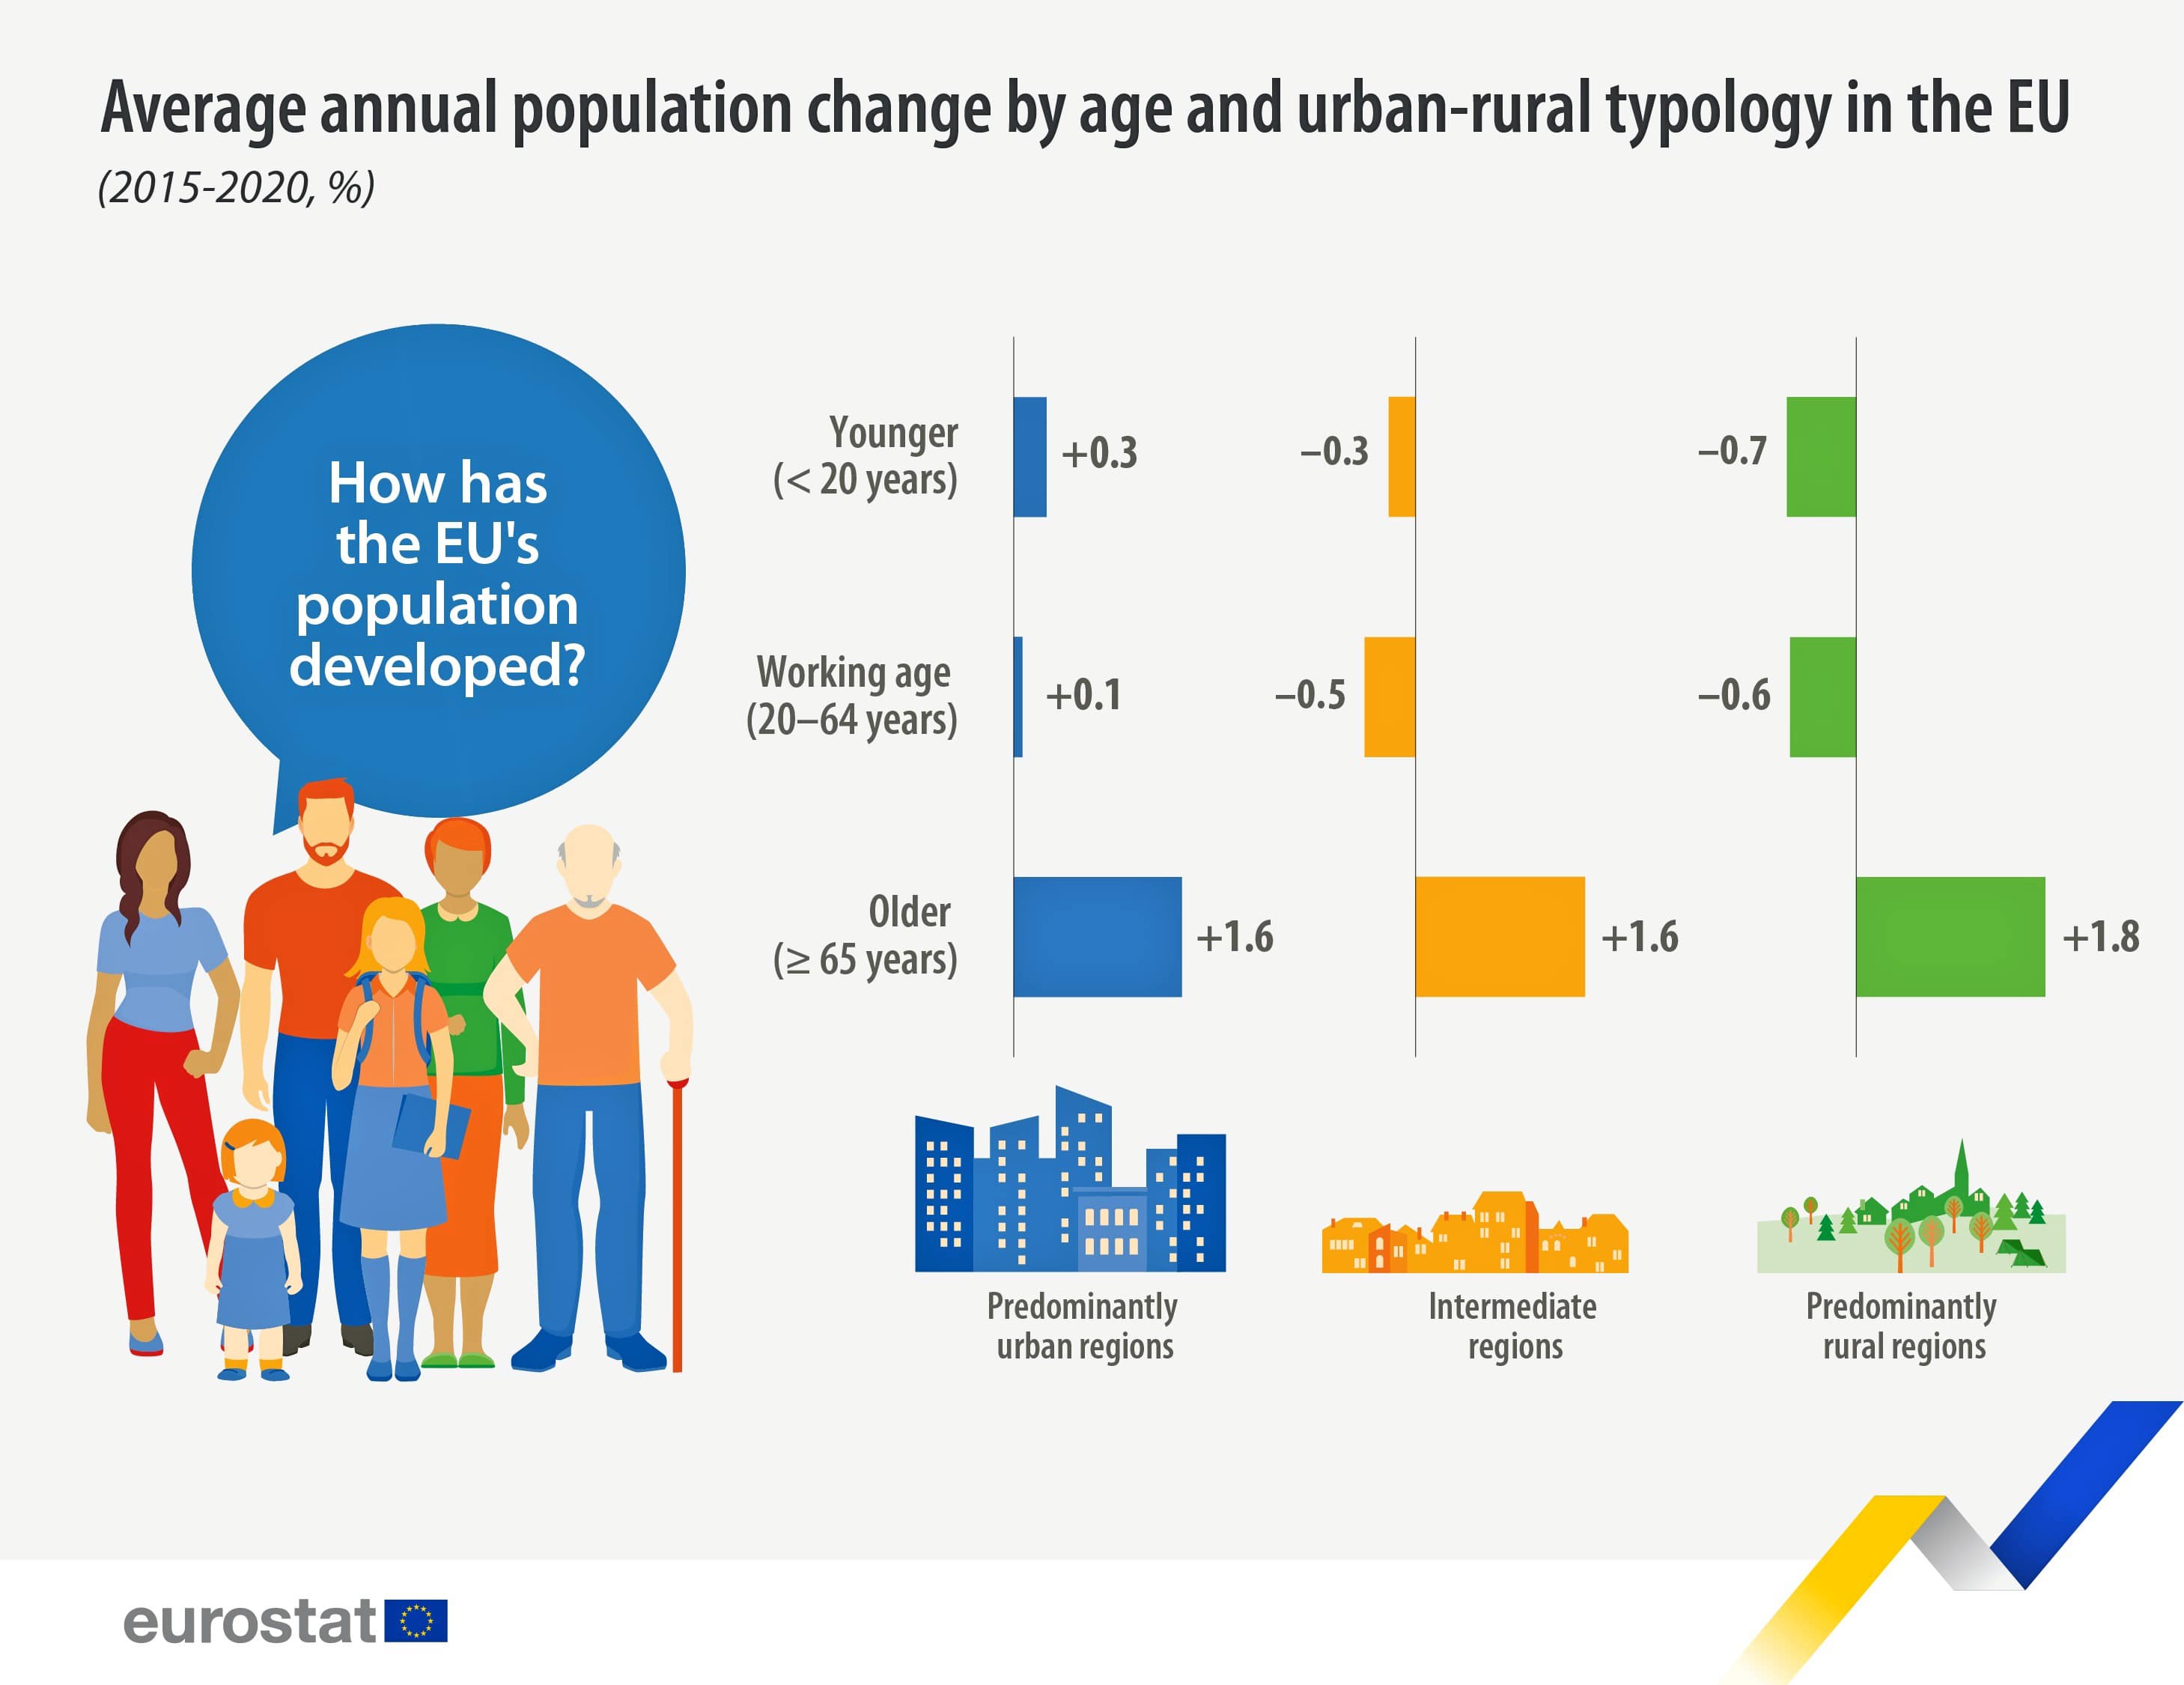 Cambio promedio anual de población por tipología urbana-rural, 2015-2020 (%)